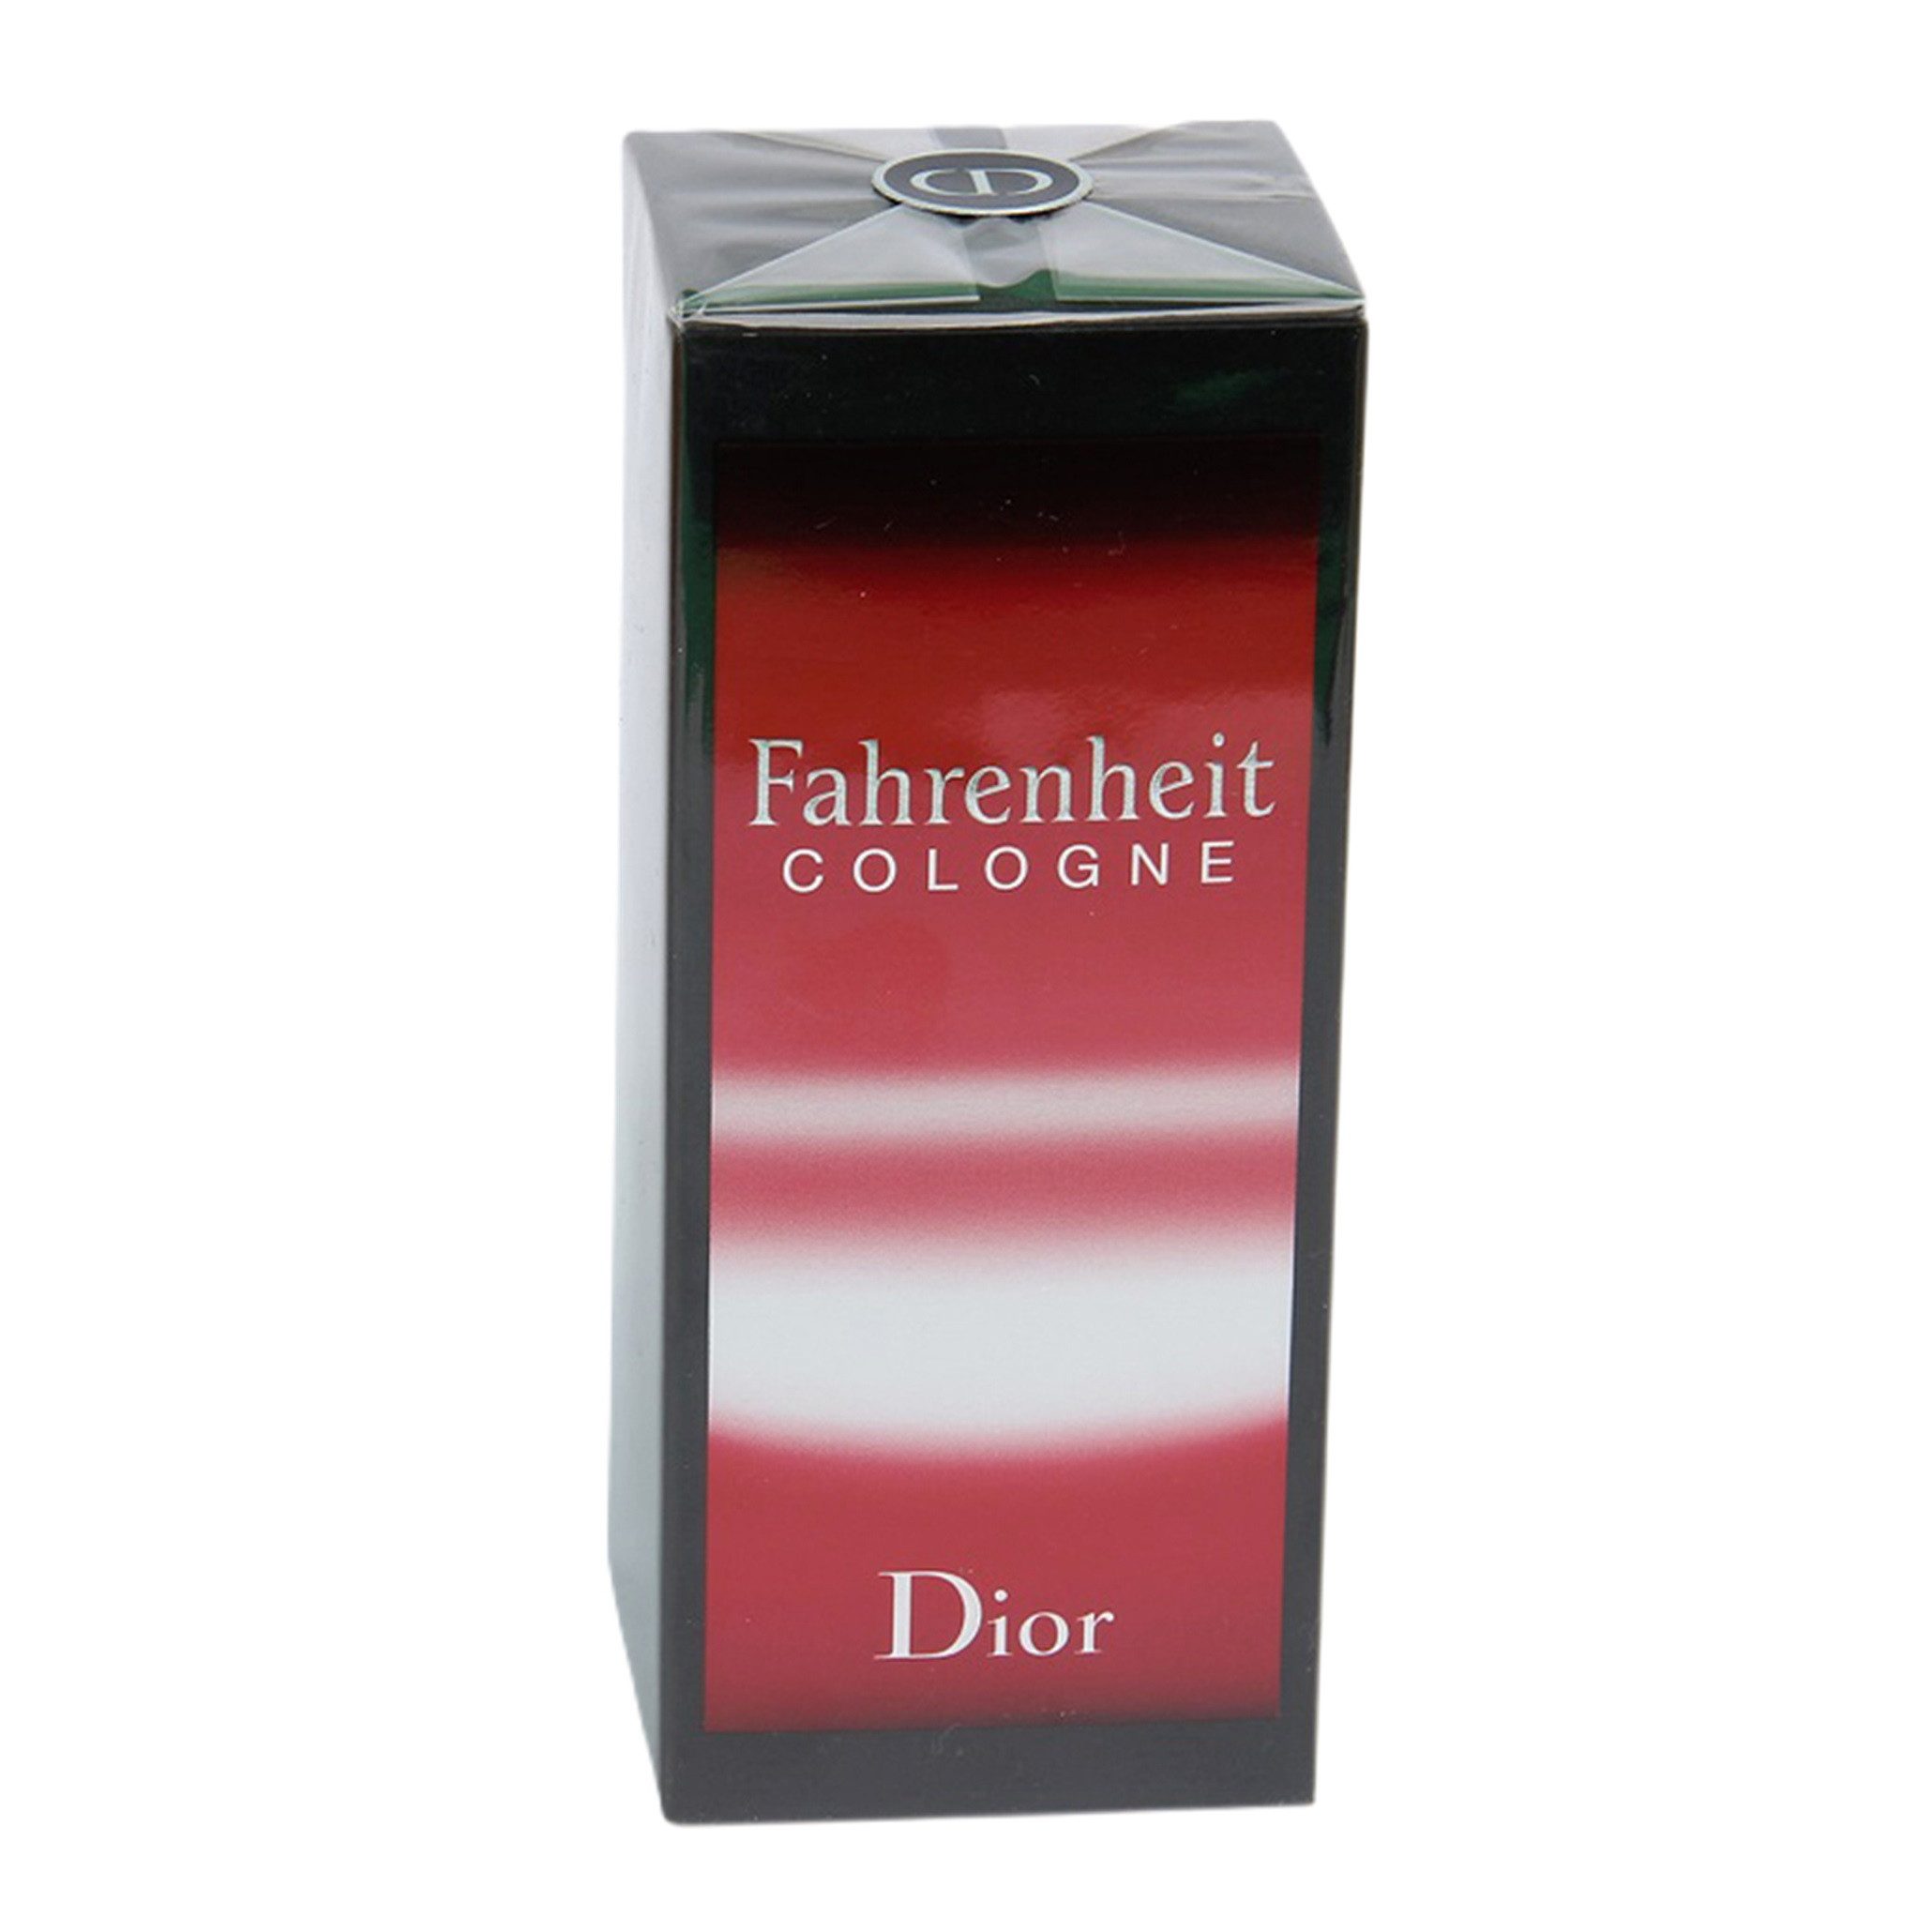 Dior Eau de Cologne Christian Dior Fahrenheit Cologne Spray 125ml